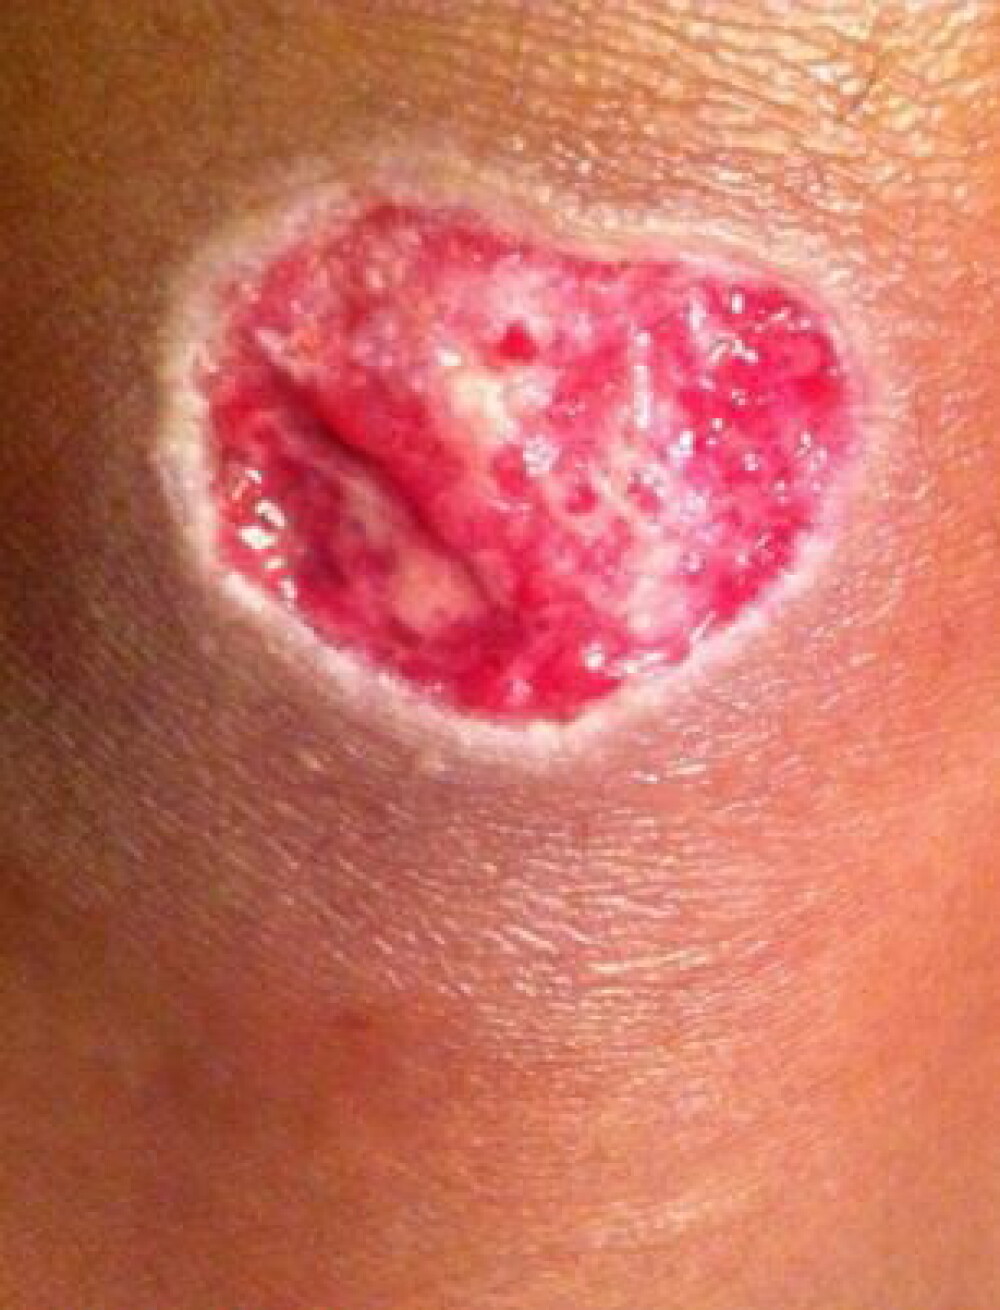 Reactia alergica violenta pe care facut-o o femeie dupa ce s-a tatuat. GALERIE FOTO - Imaginea 3